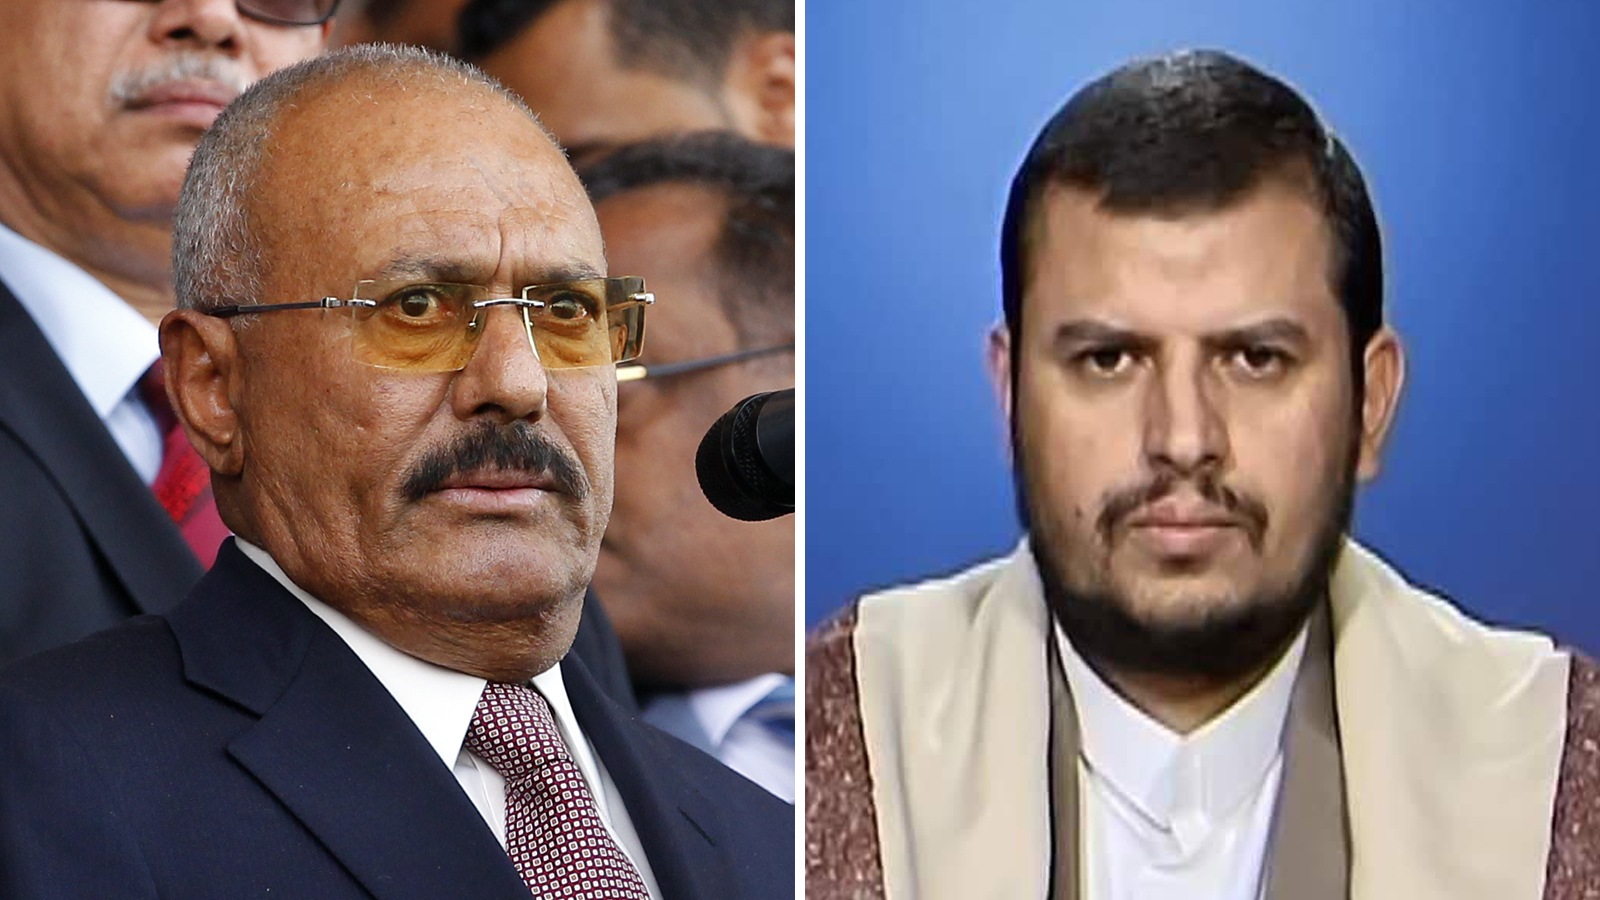 المطلوب من الرياض أن تأخذ تعهد من صالح أنه لن يقصي أحد من المشهد السياسي اليمني خلاف الحوثيين، أو يشملهم؛ أي يكون هناك مكان للشراكة مع التيار الوحدوي الجنوبي، وحركة الإصلاح اليمني